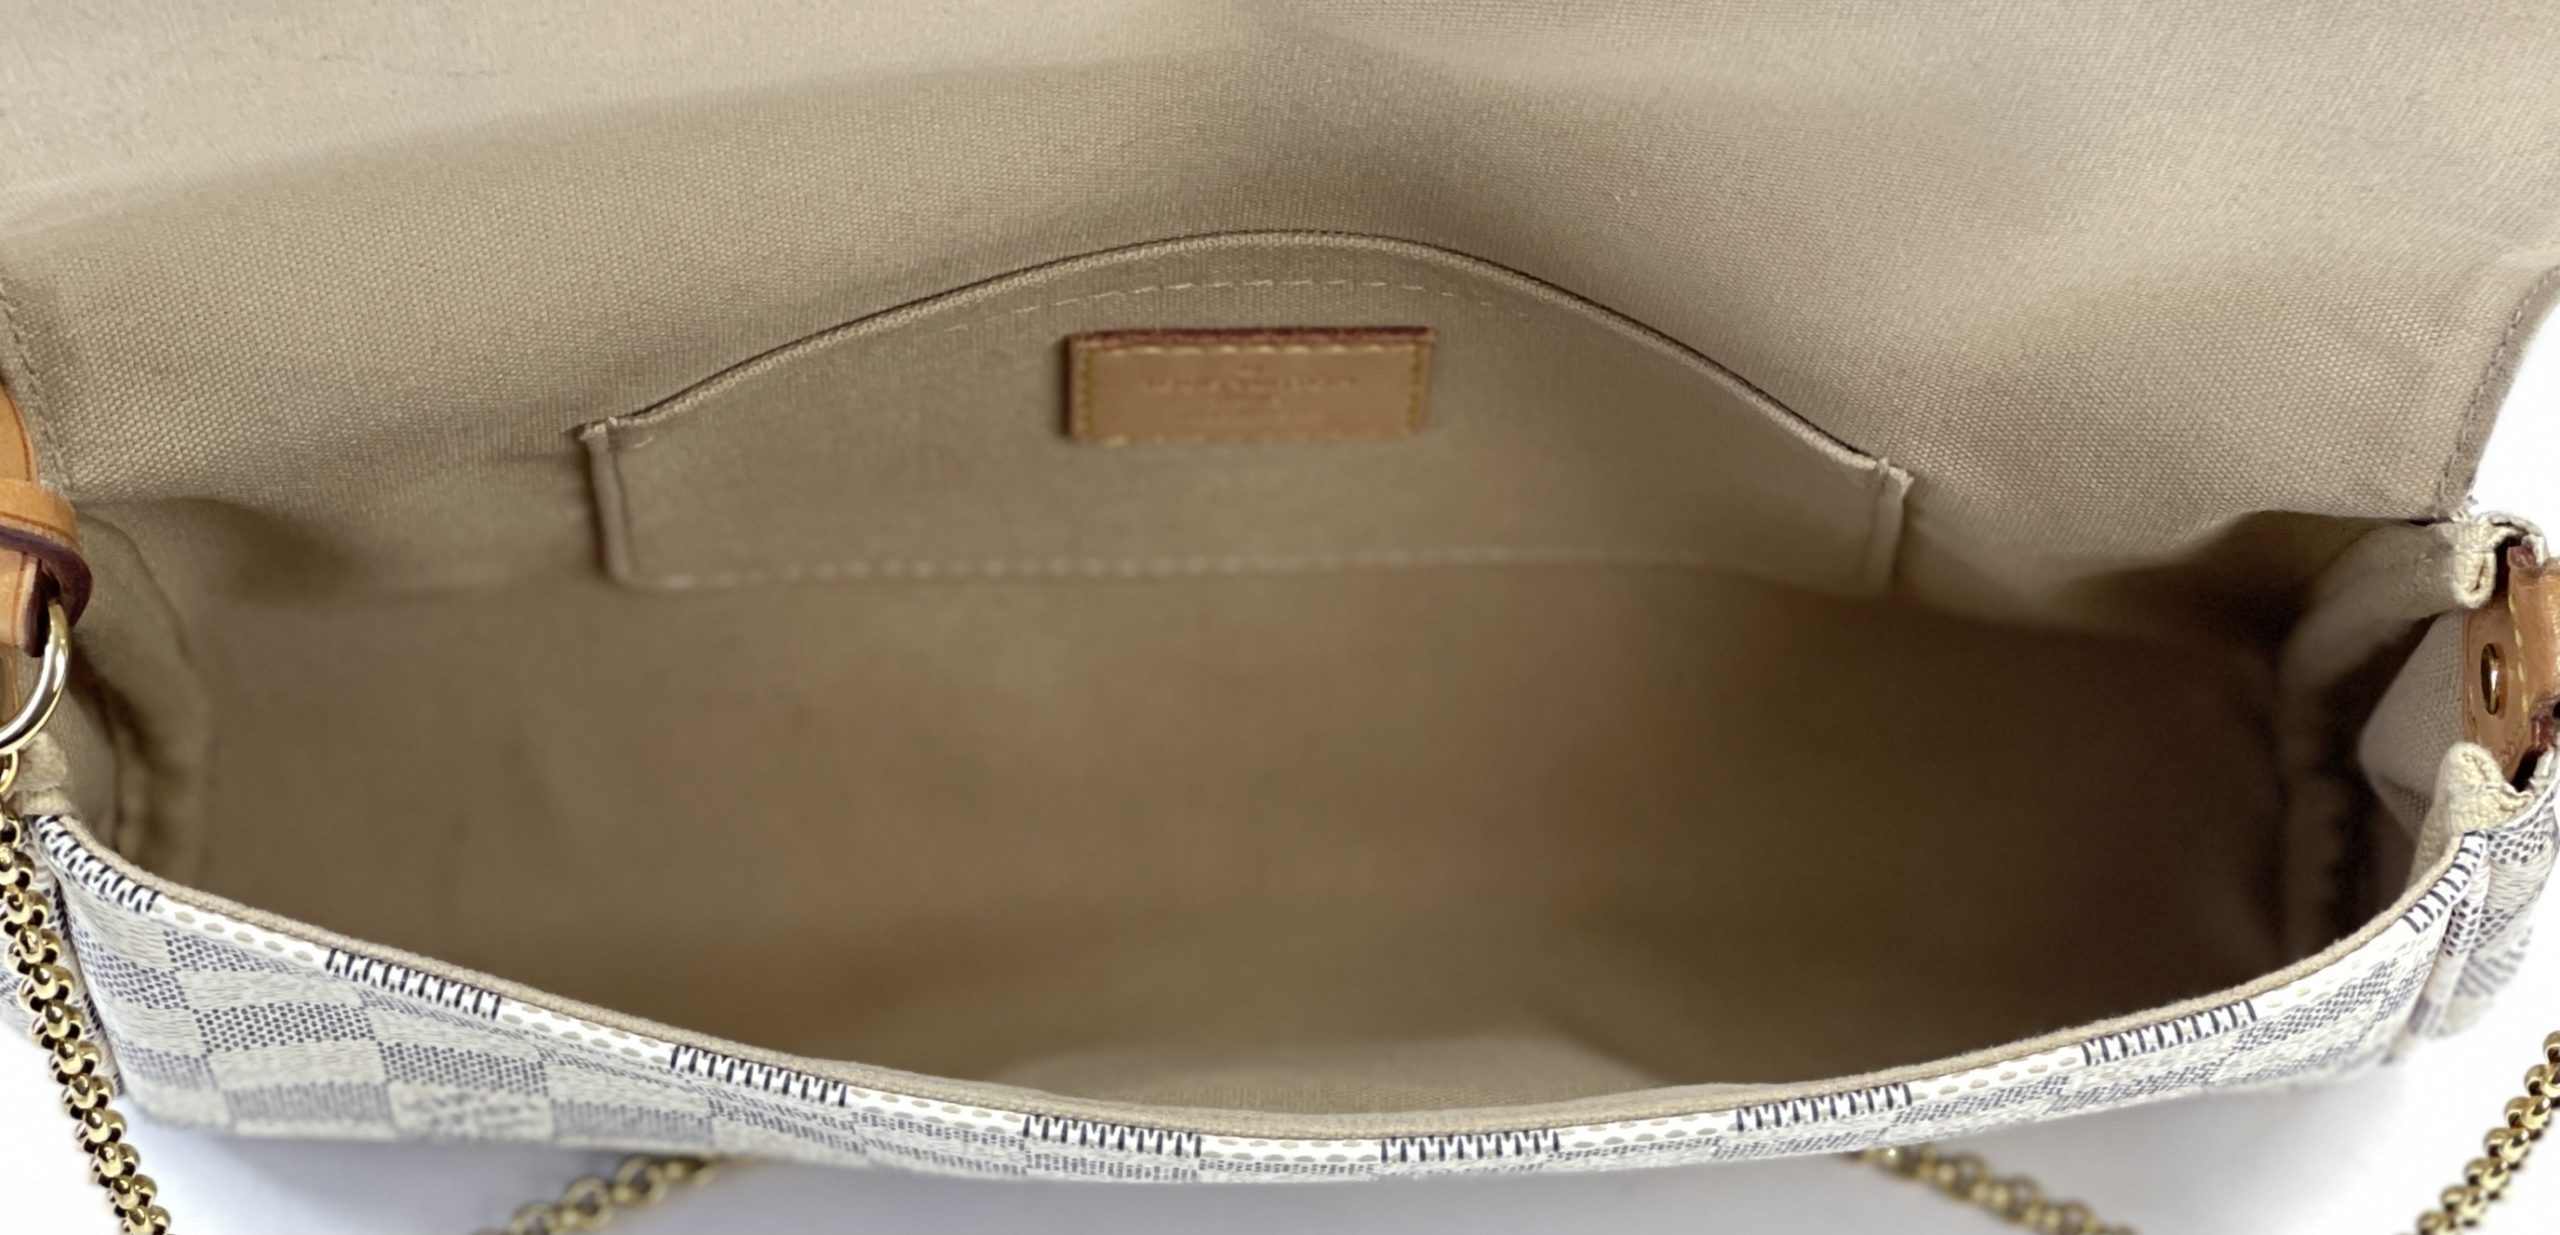 Louis Vuitton Damier Azur Favorite MM Shoulder Bag